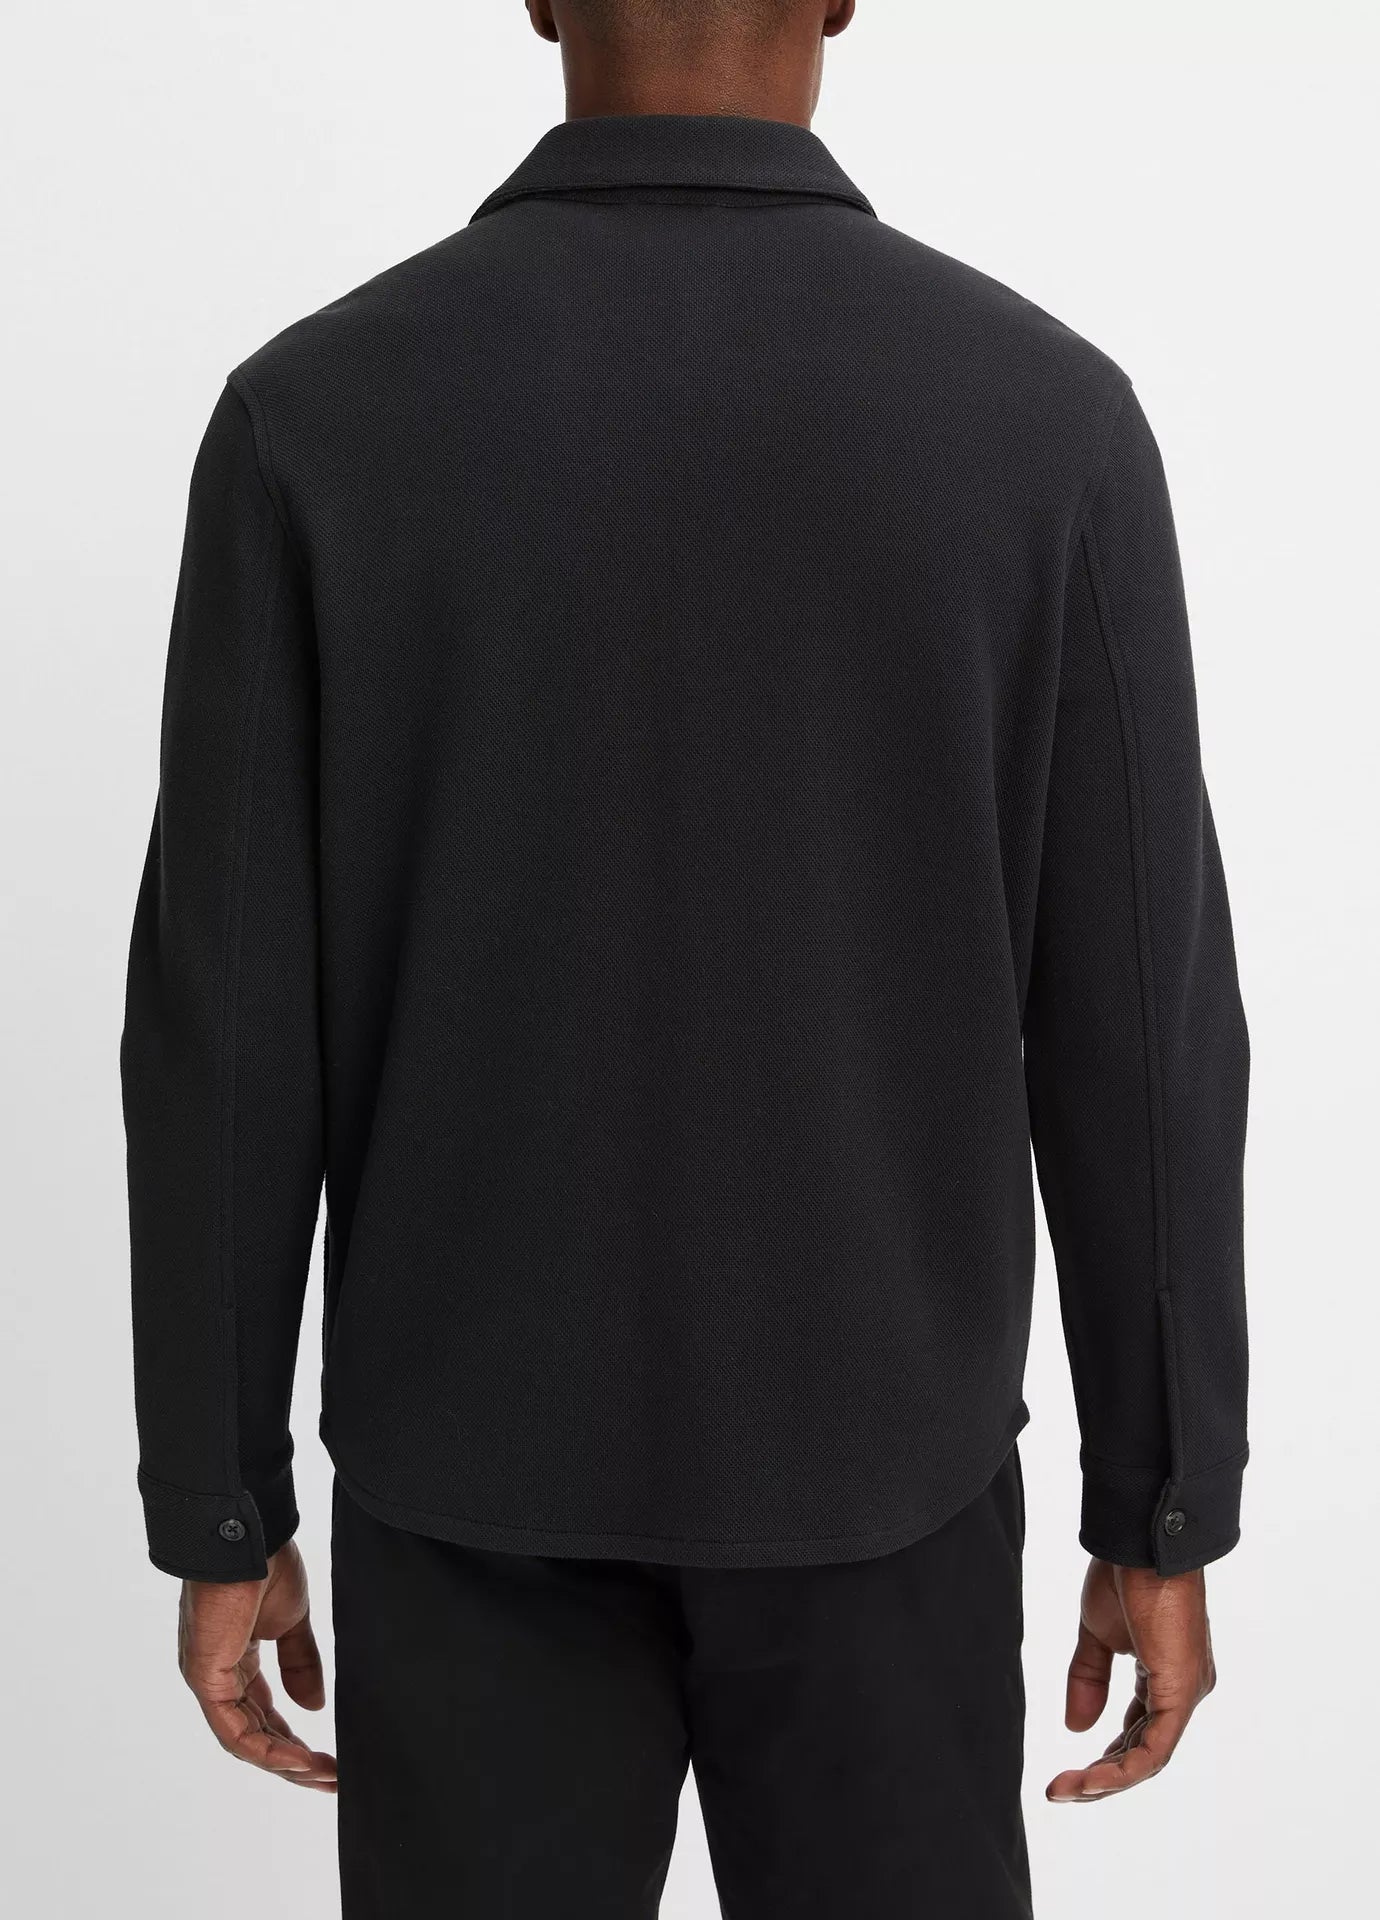 Vince Shirt Jacket Black/Med Grey